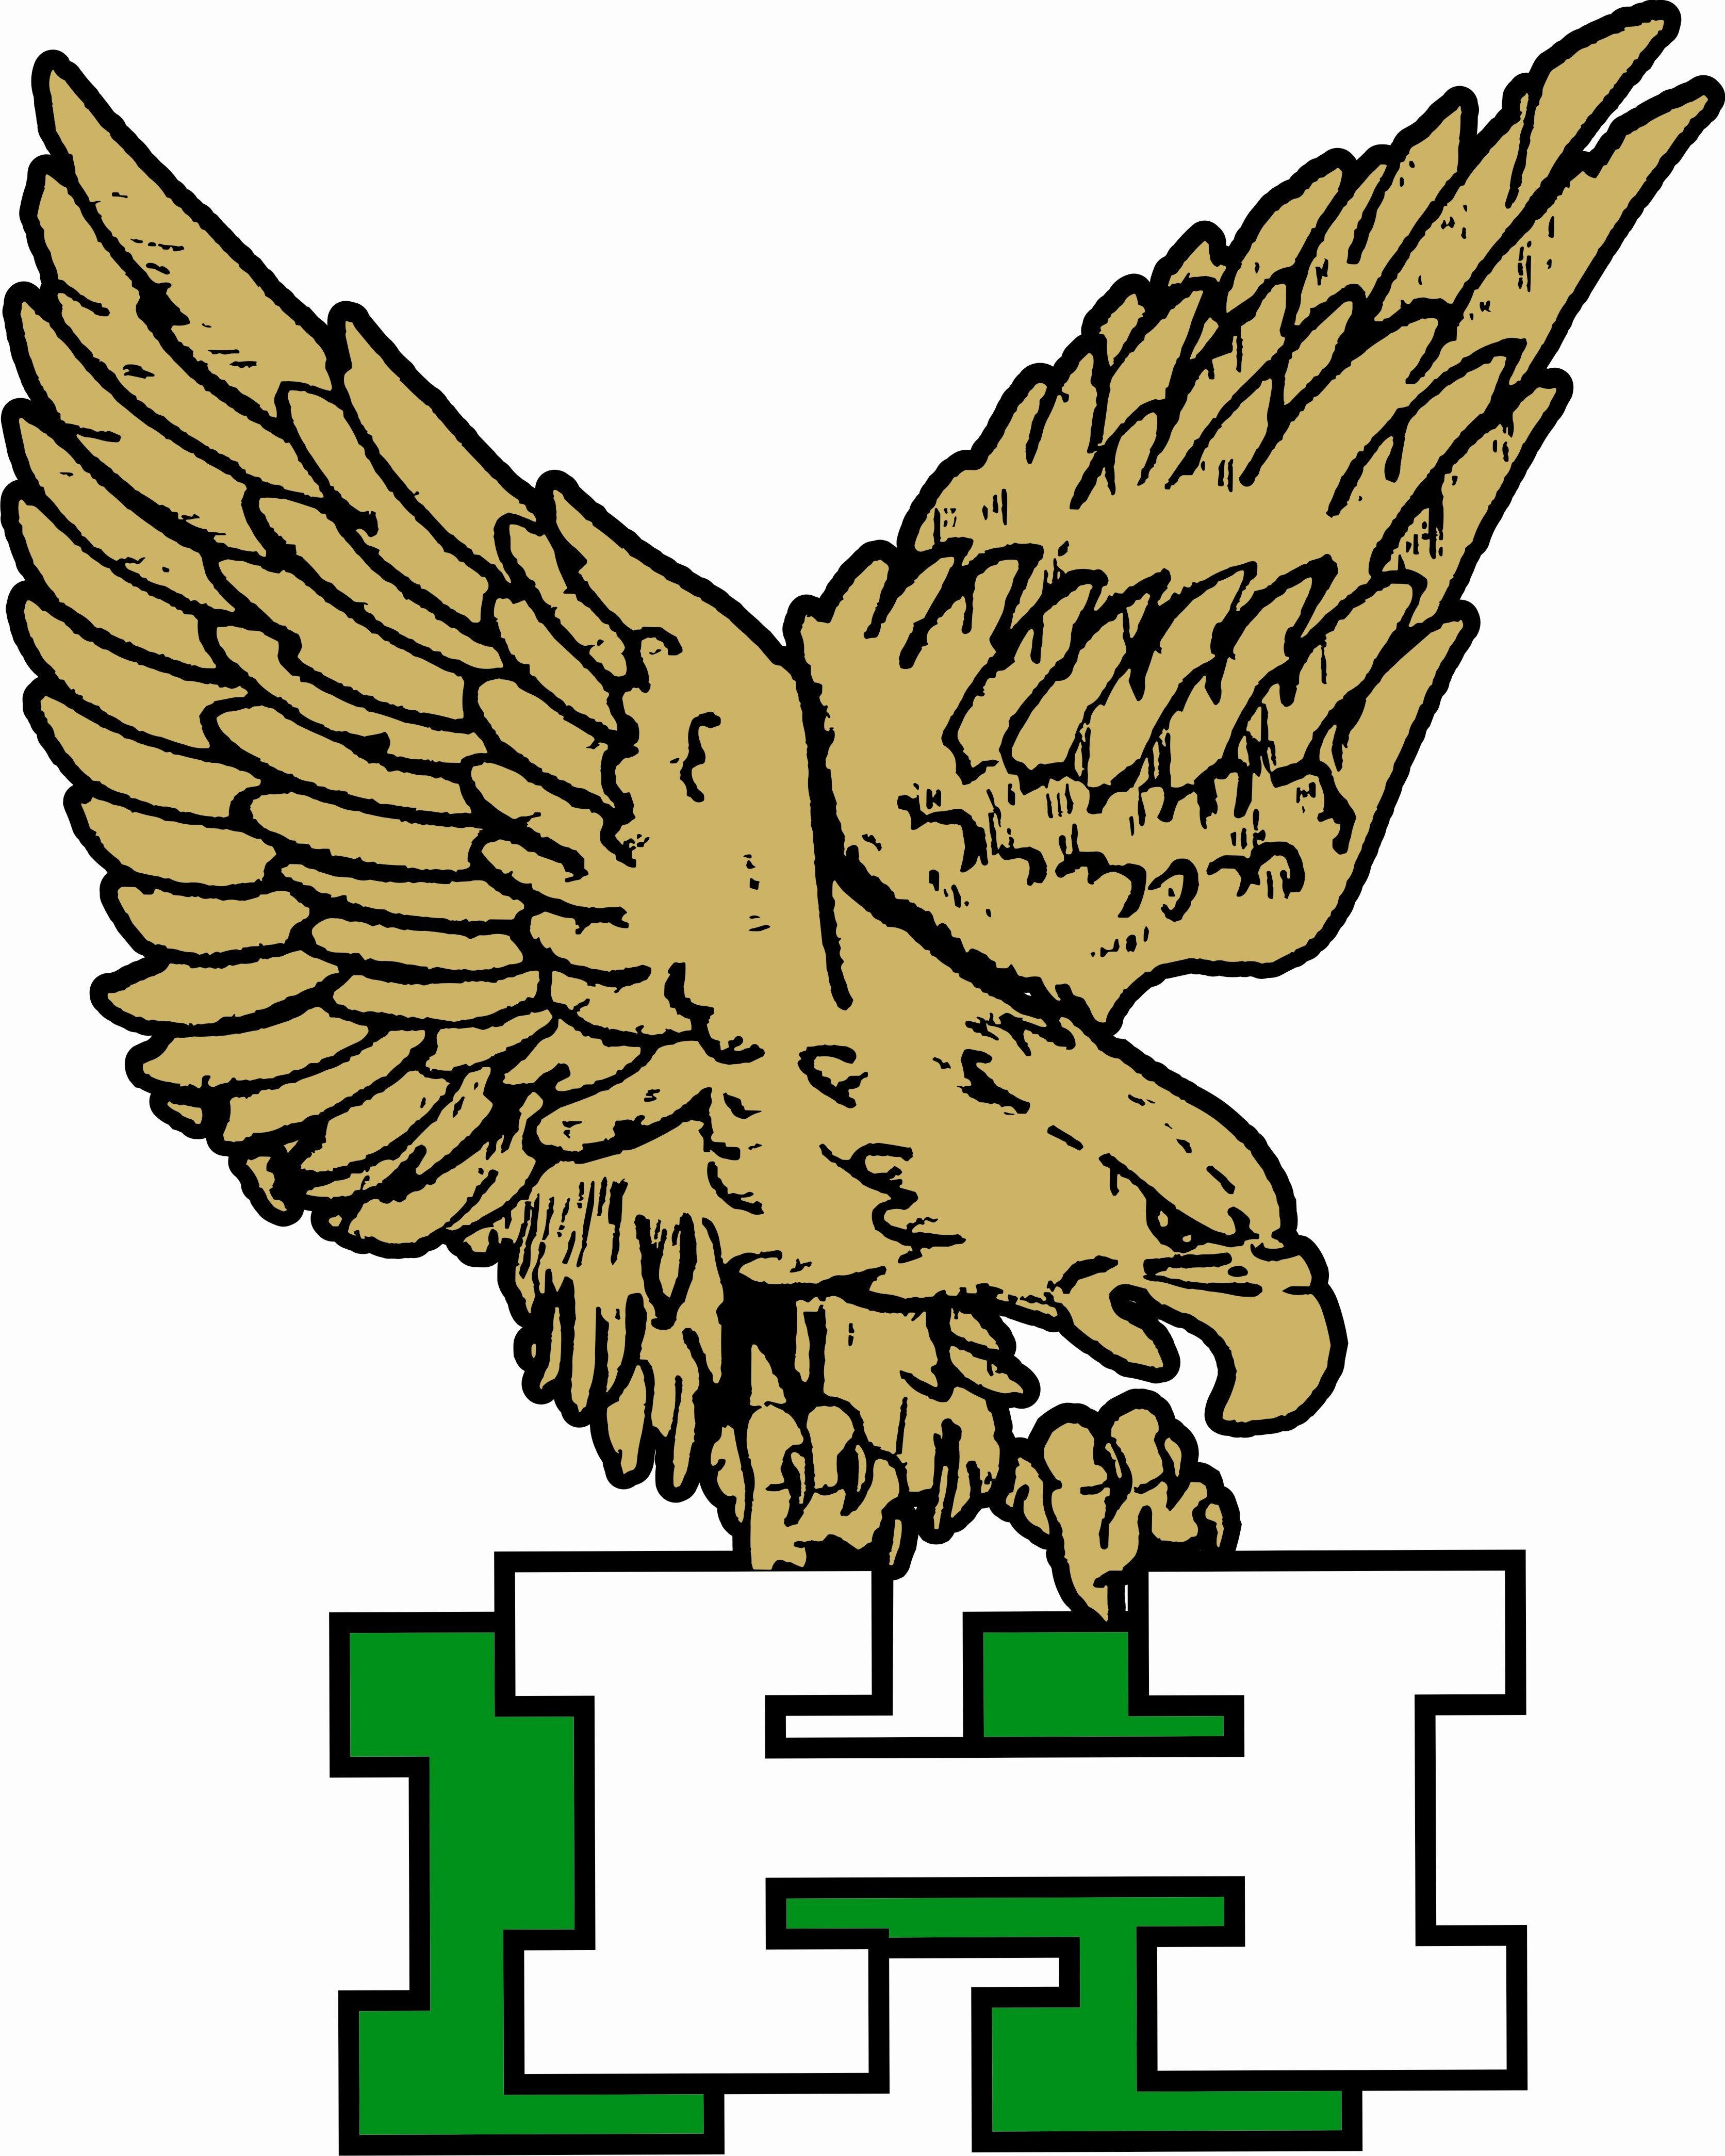 Heritage Hawks Logo - Saginaw Community Foundation Heritage Hawks